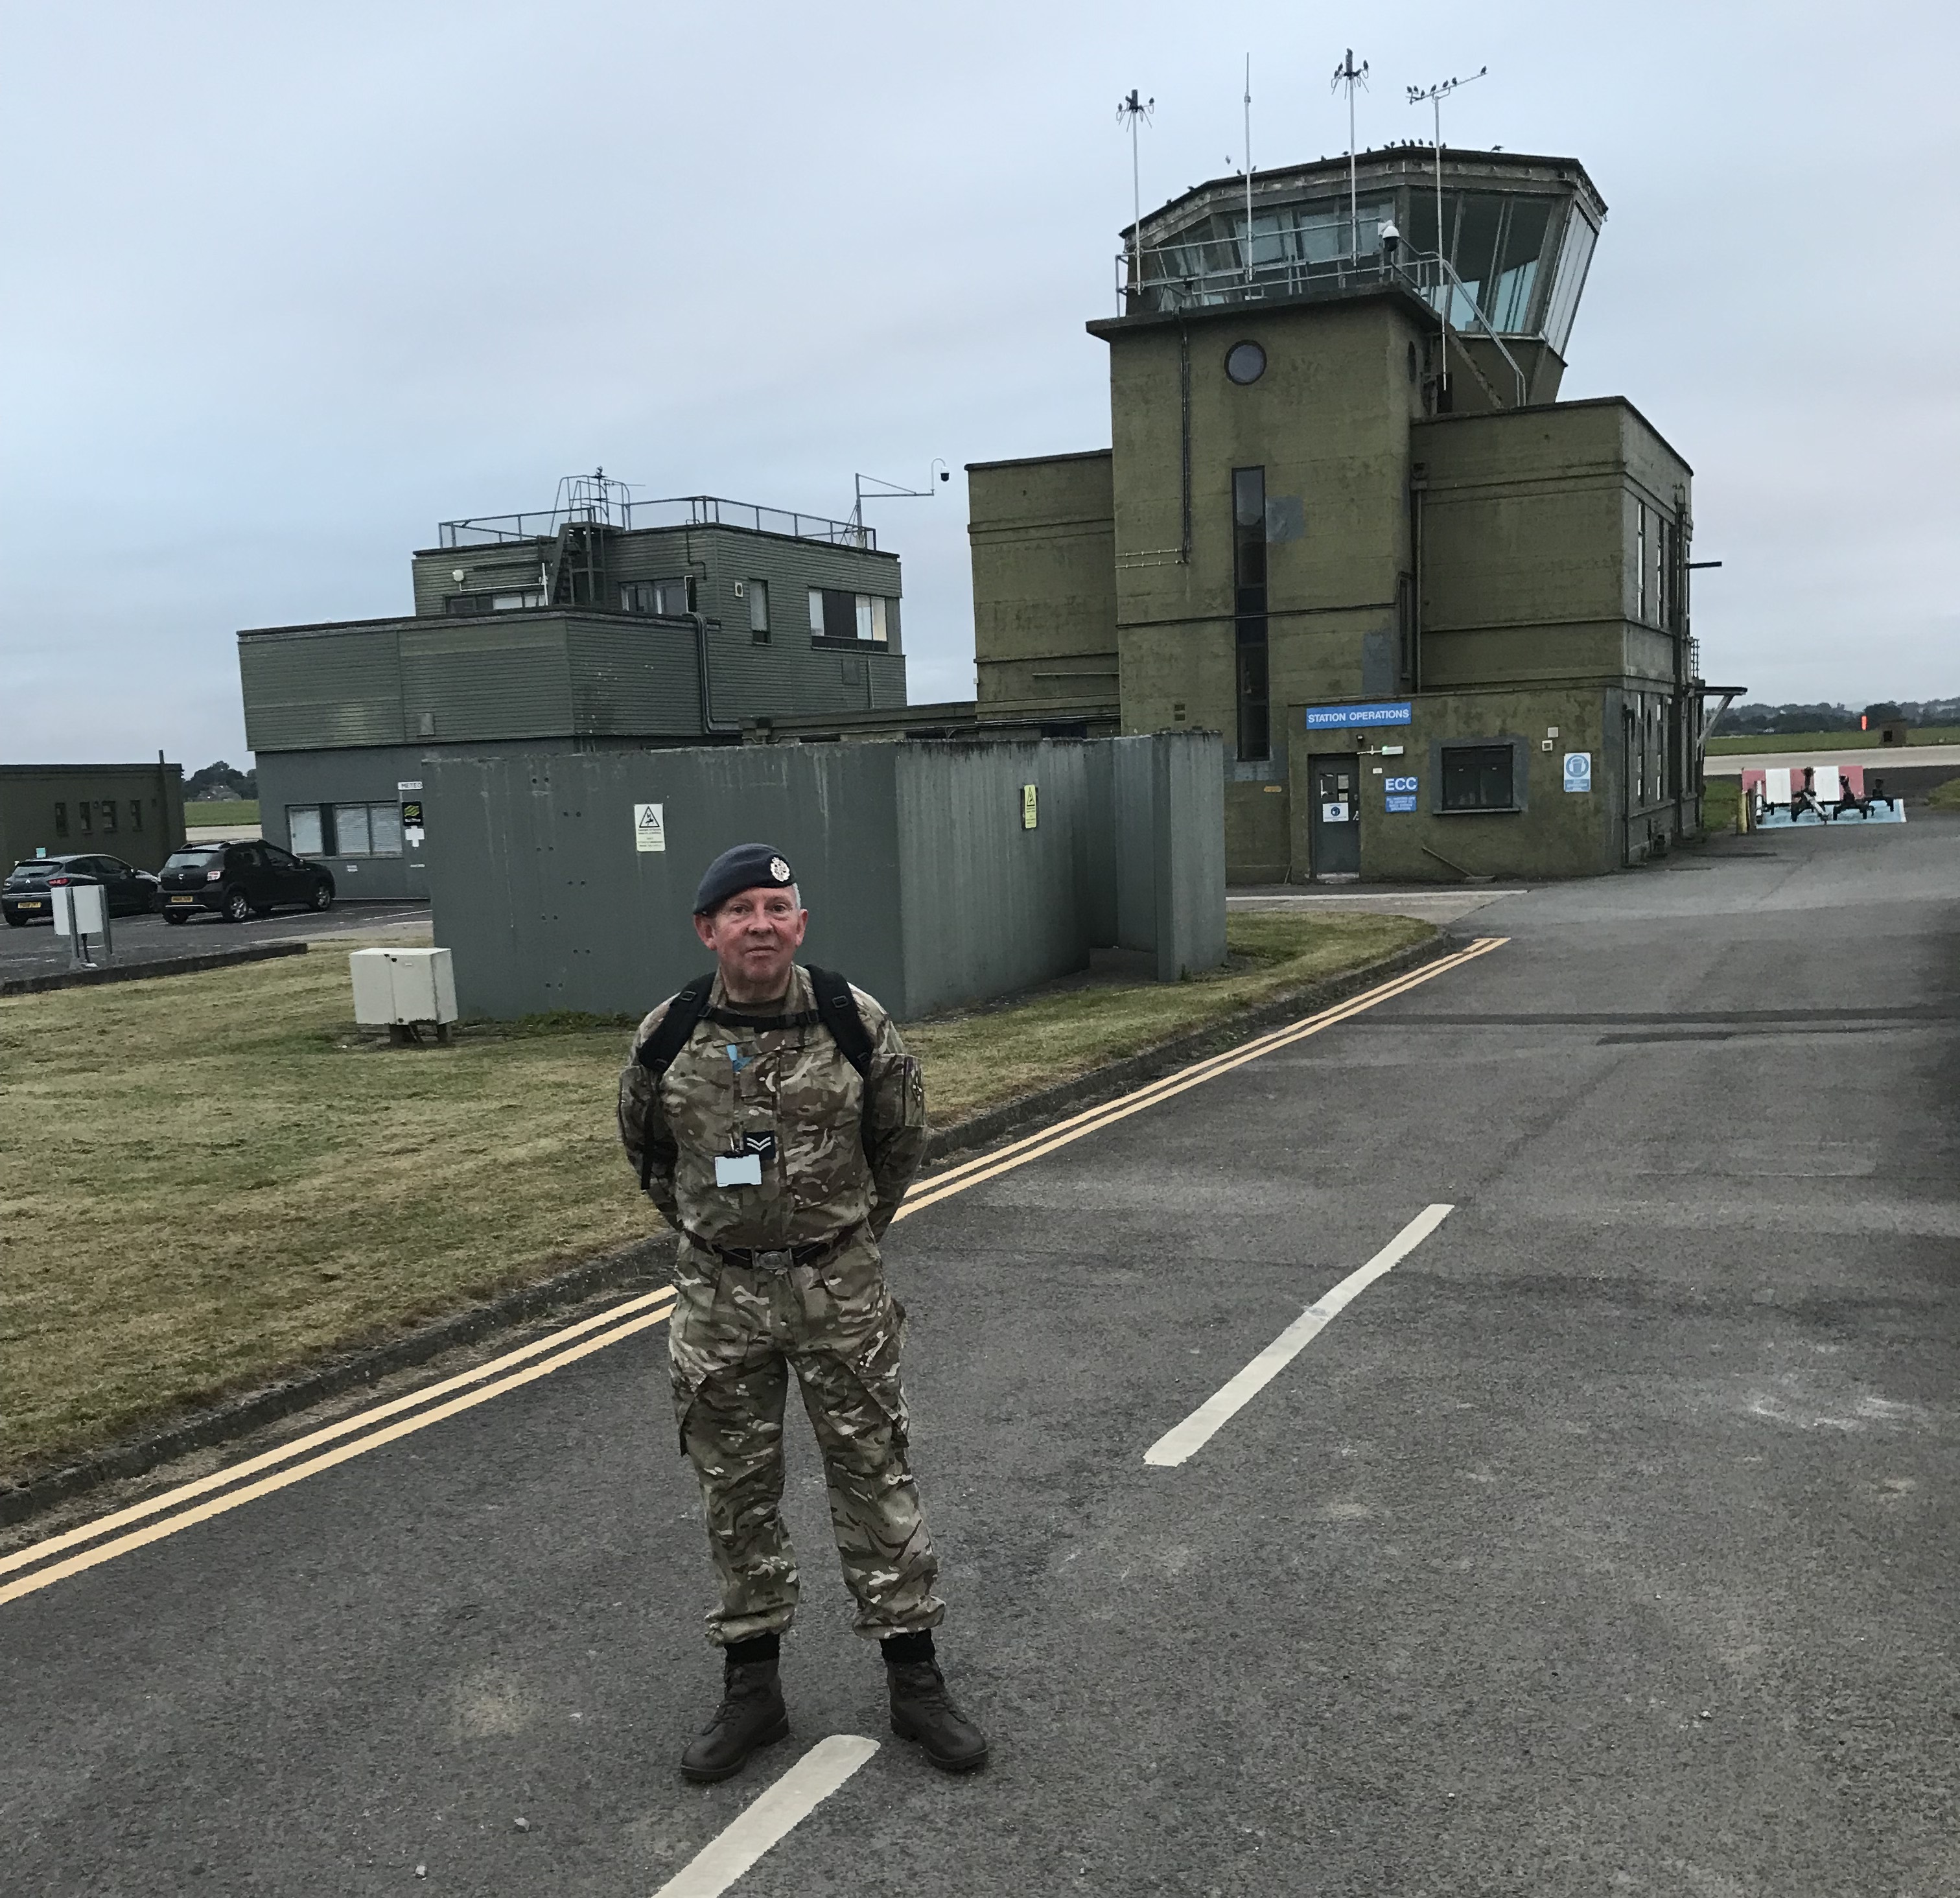 RAF Aviator stands in RAF base.